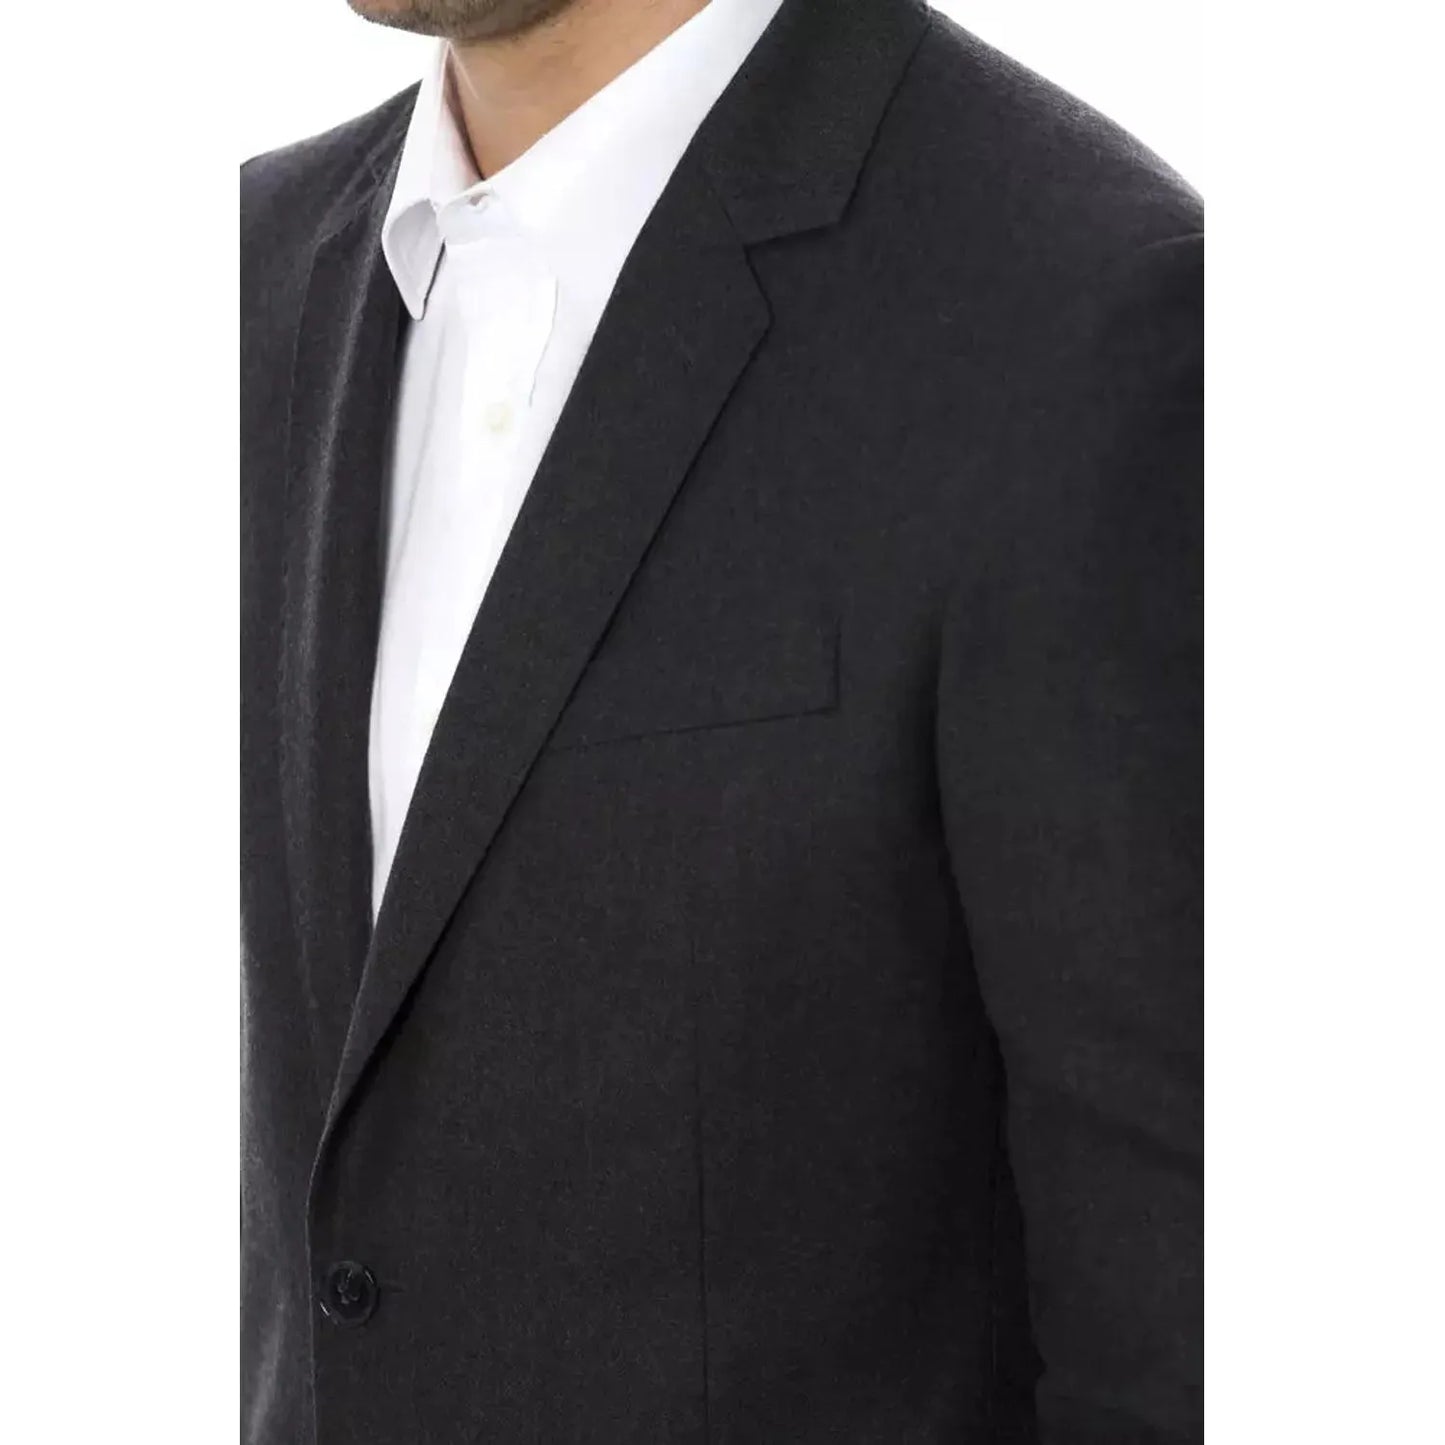 Verri Elegant Gray Wool Men's Blazer vgrigiochiaro-blazer